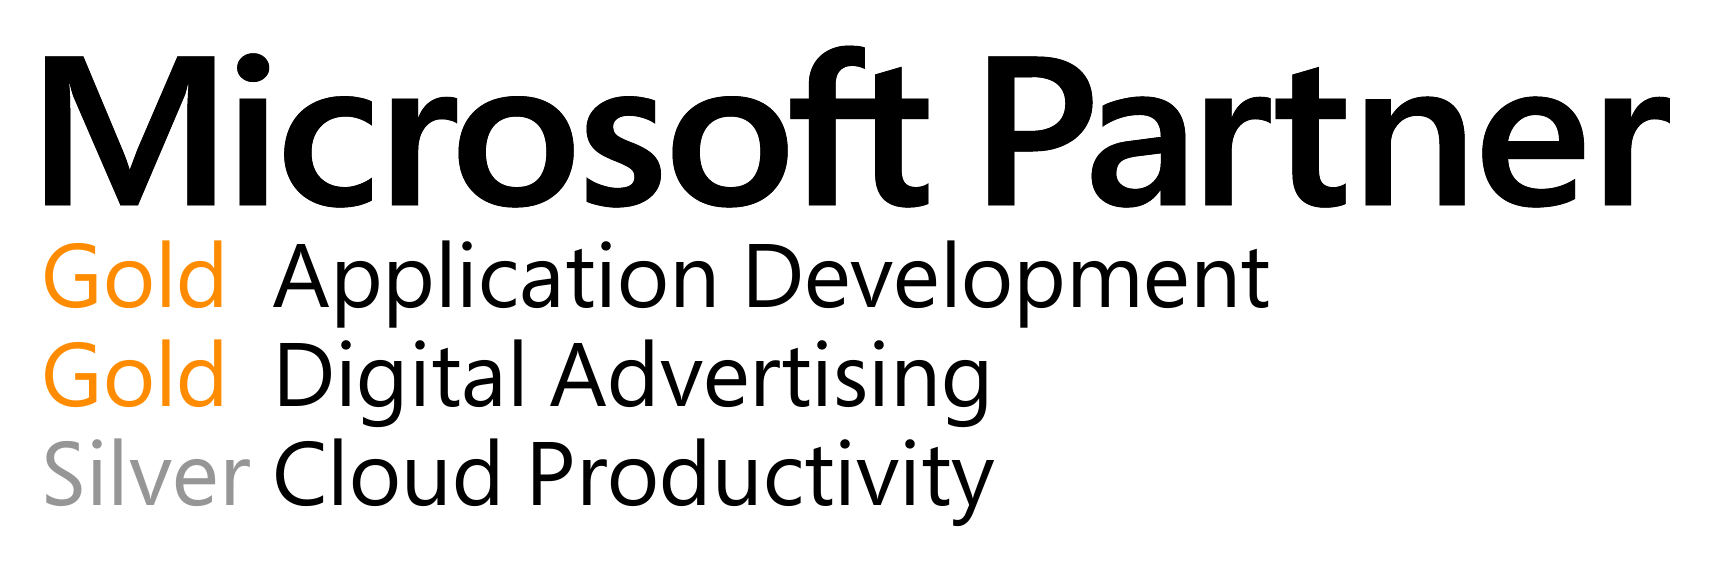 ms_partner_logo.png